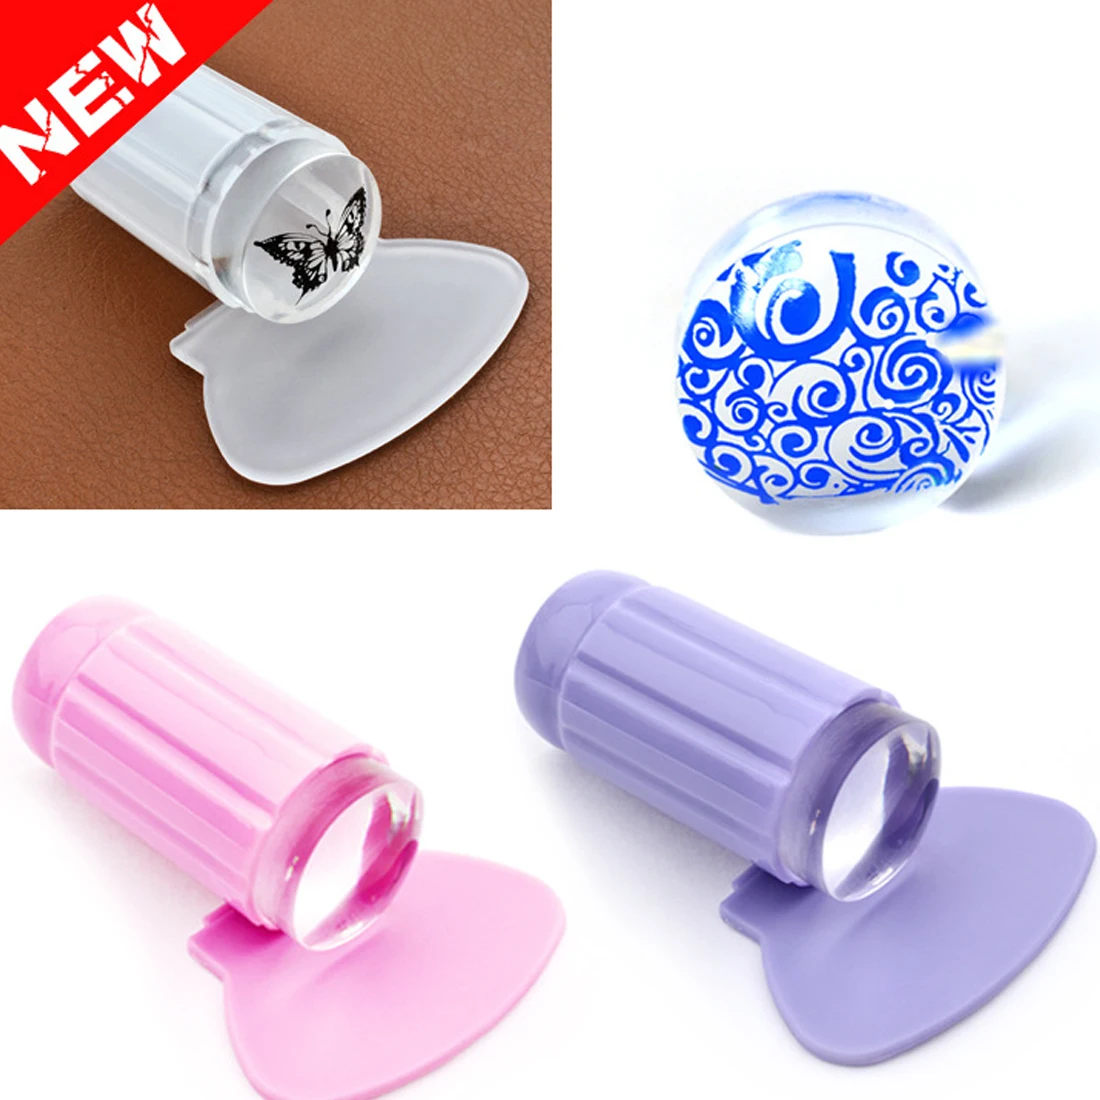 Горячая скребок для лака для печати ногтей штамп инструмент прозрачный желе штамп прозрачный штемпель для тиснения ногтей